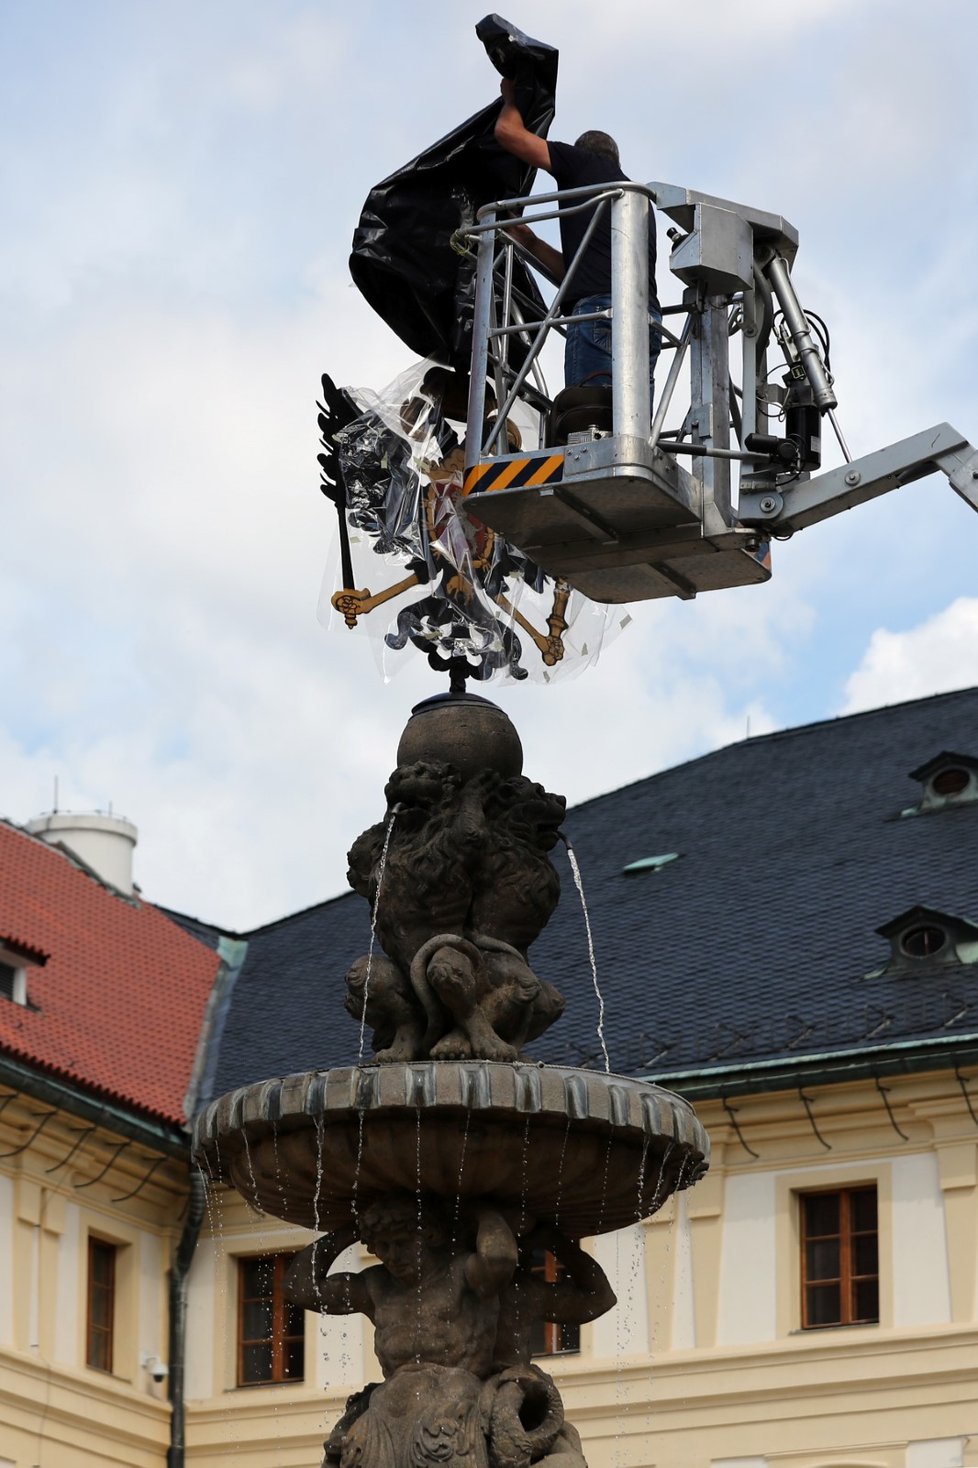 Na Leopoldovu kašnu na II. nádvoří Pražského hradu se vrátila orlice, která byla stržena v roce 1918.